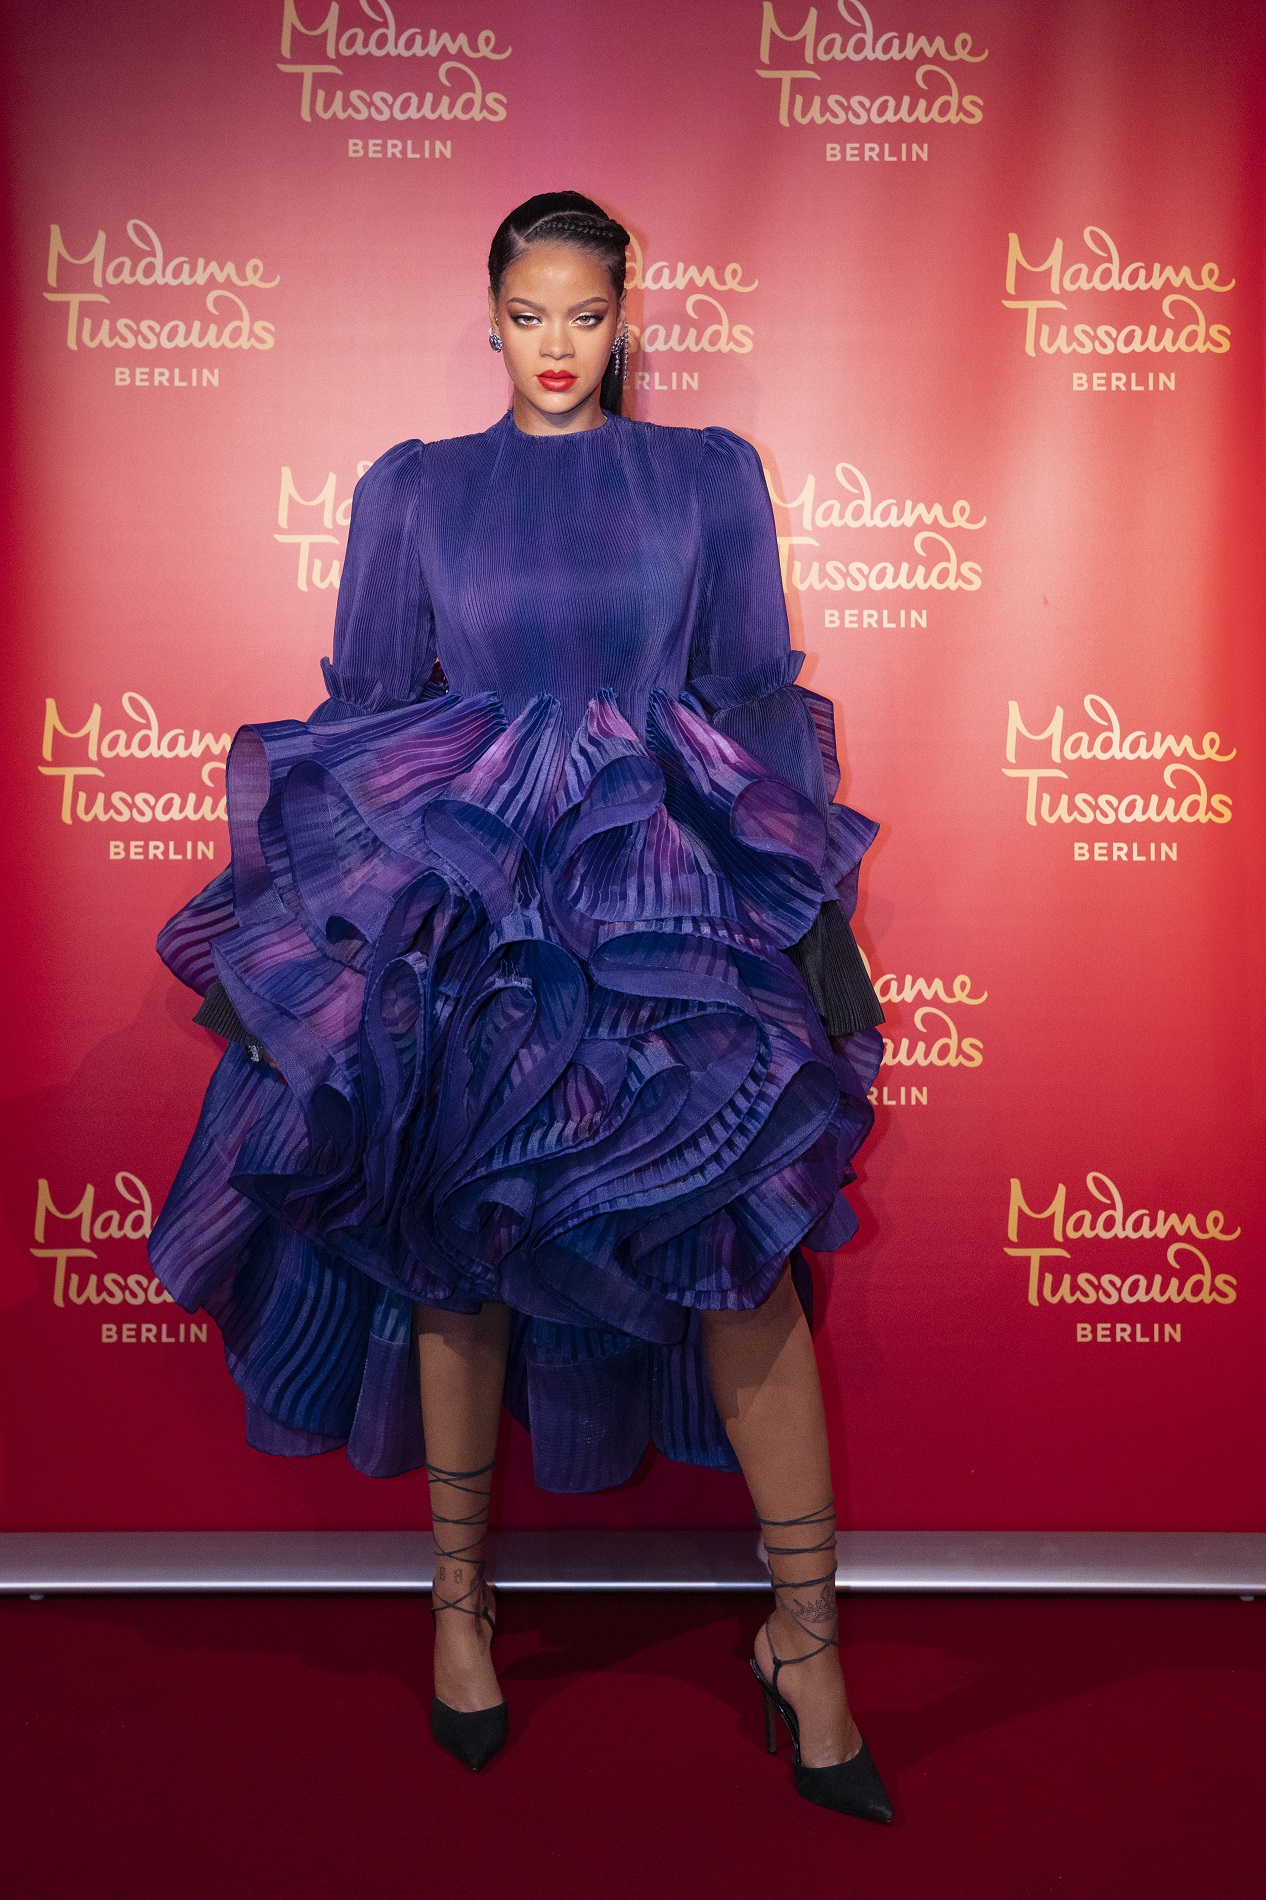 Die Wachsfigur von US-Superstar Rihanna im Madame Tussauds Berlin